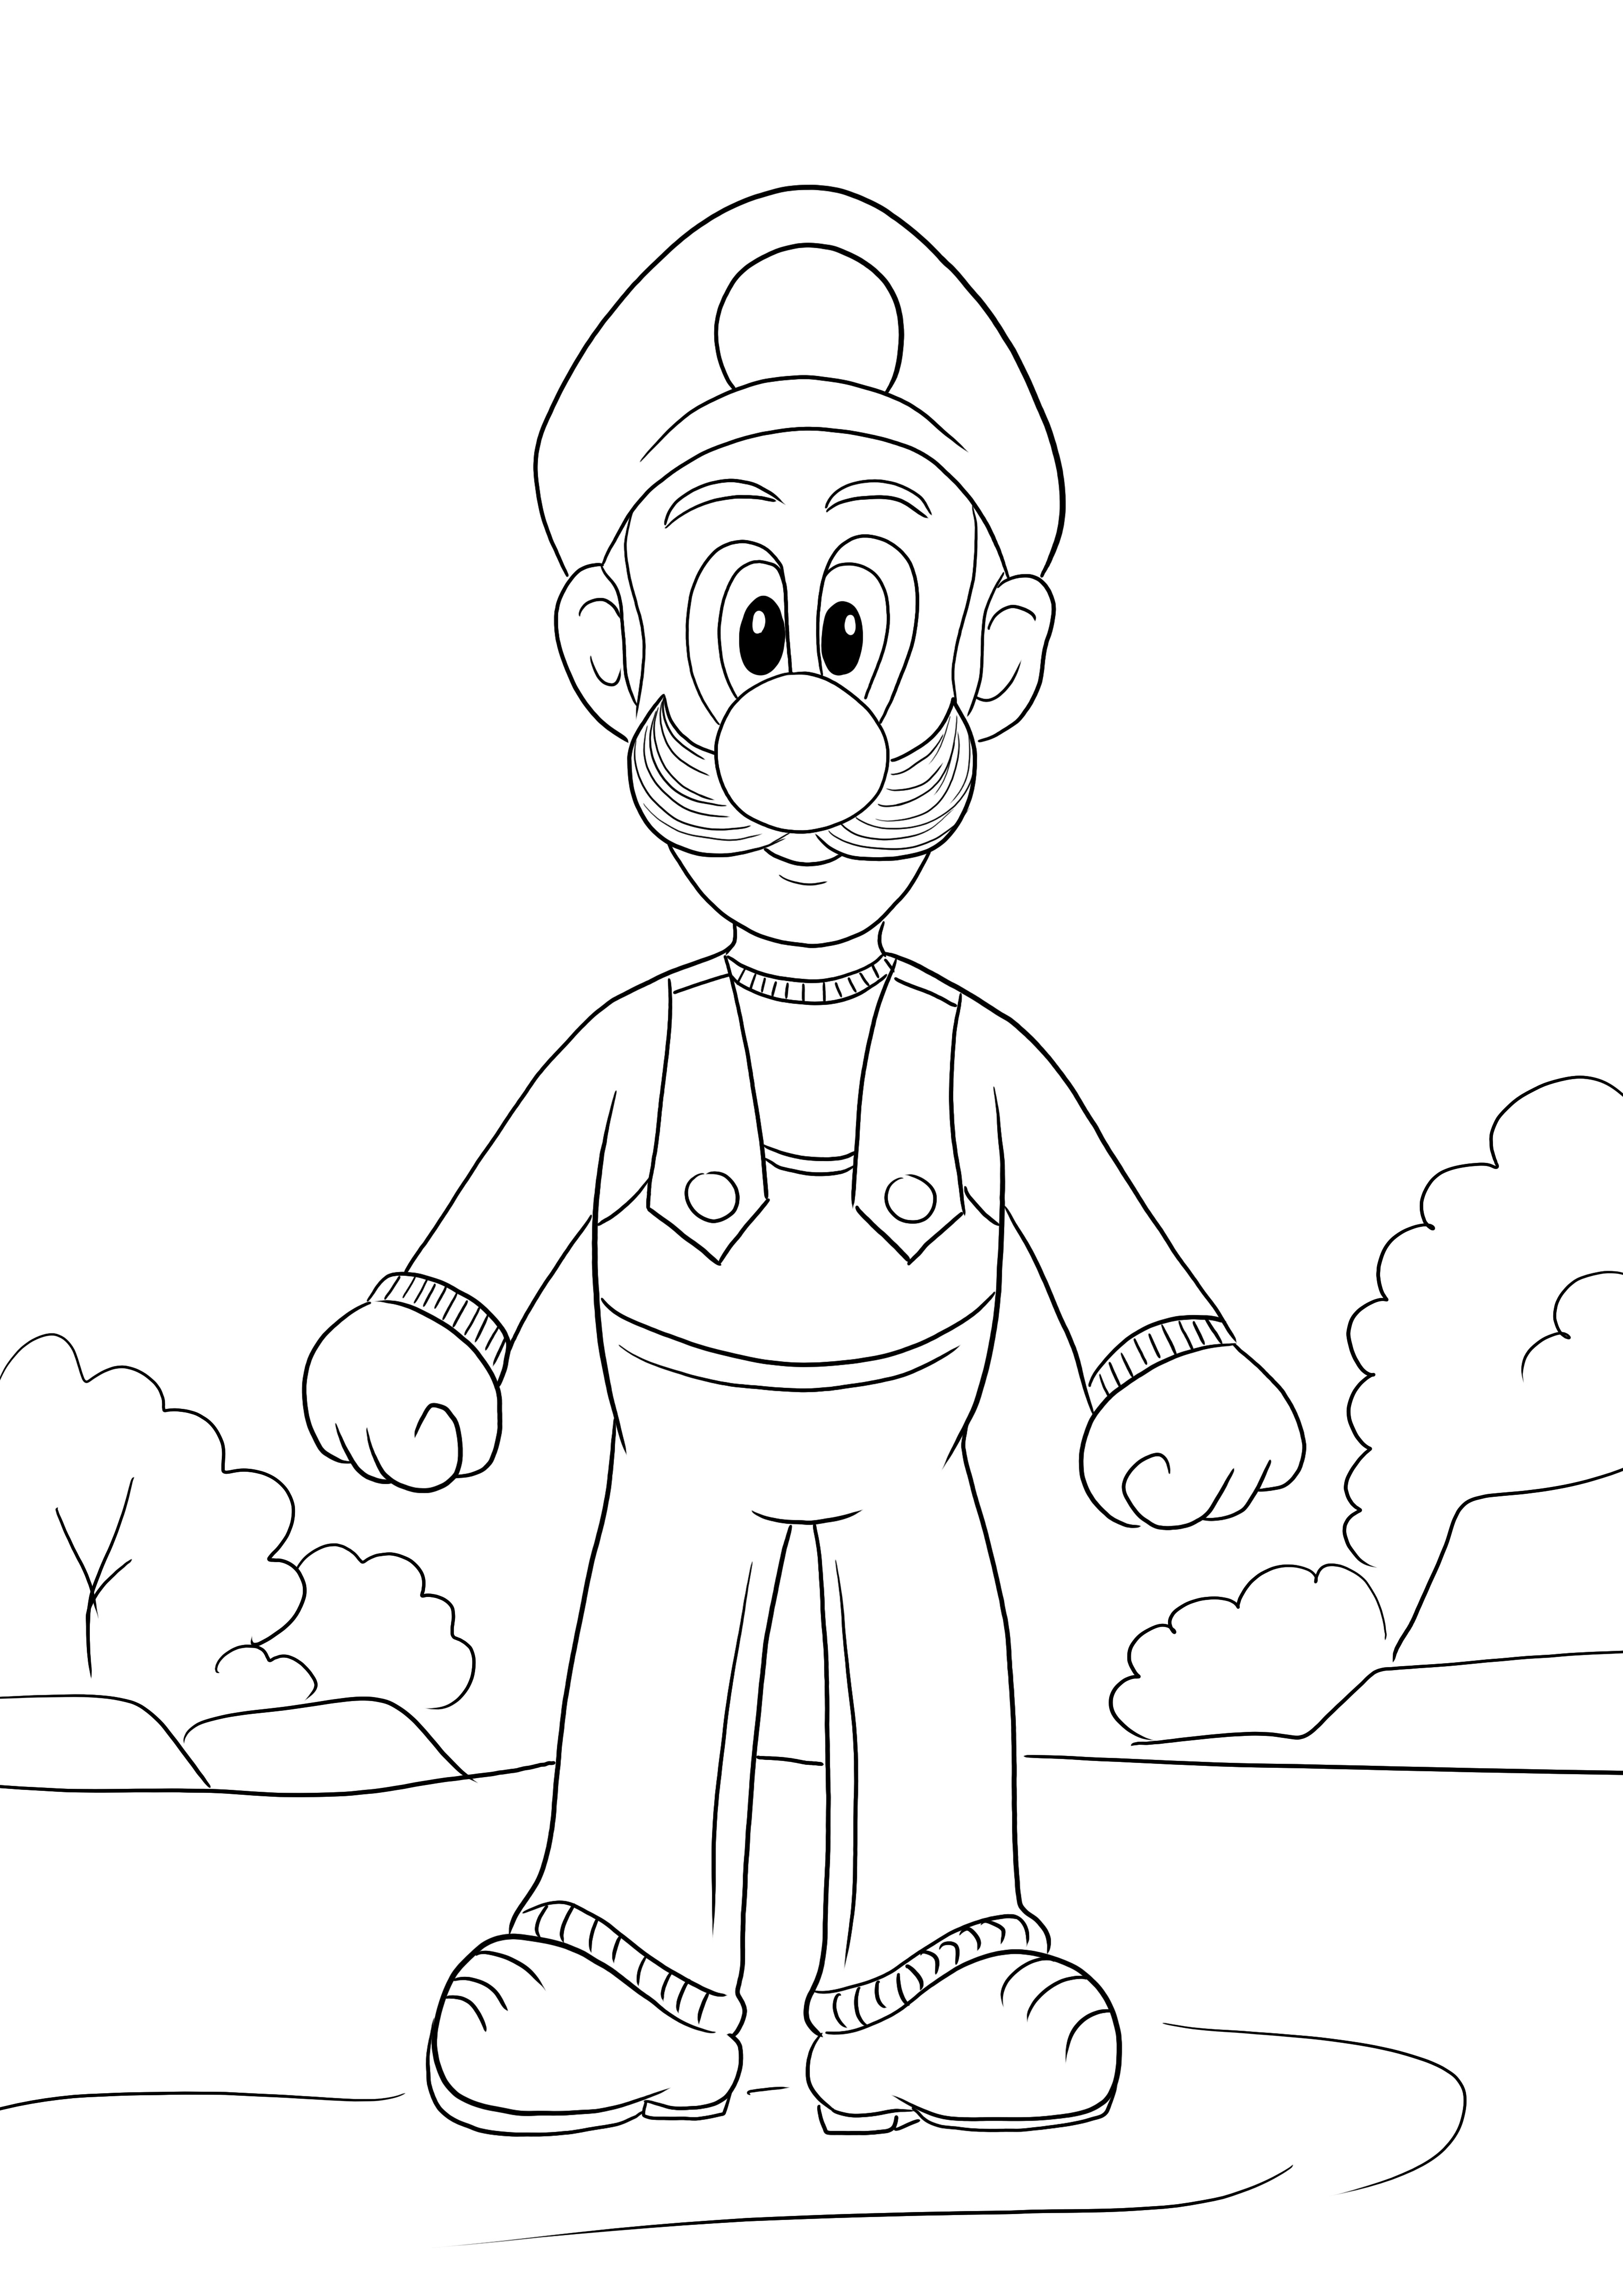 Voici une image à colorier gratuite de Luigi du jeu Super Mario à télécharger ou à imprimer gratuitement